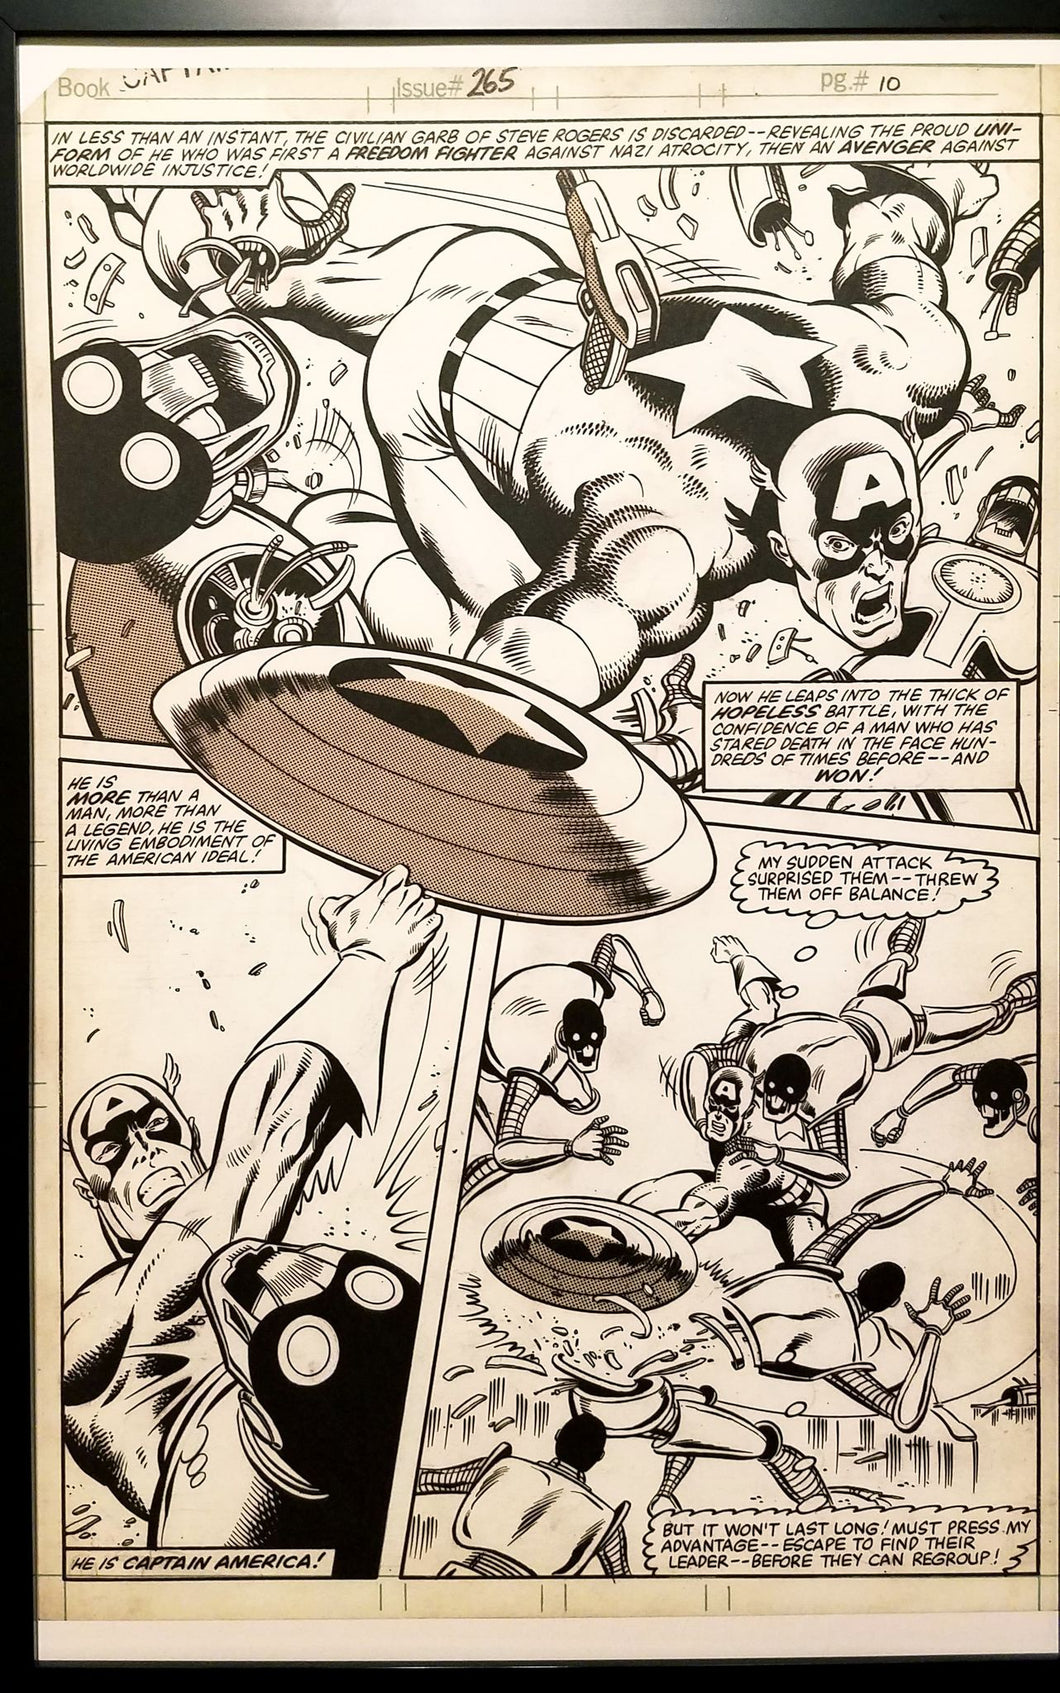 Captain America #265 pg. 10 Mike Zeck 11x17 FRAMED Original Art Poster Marvel Comics